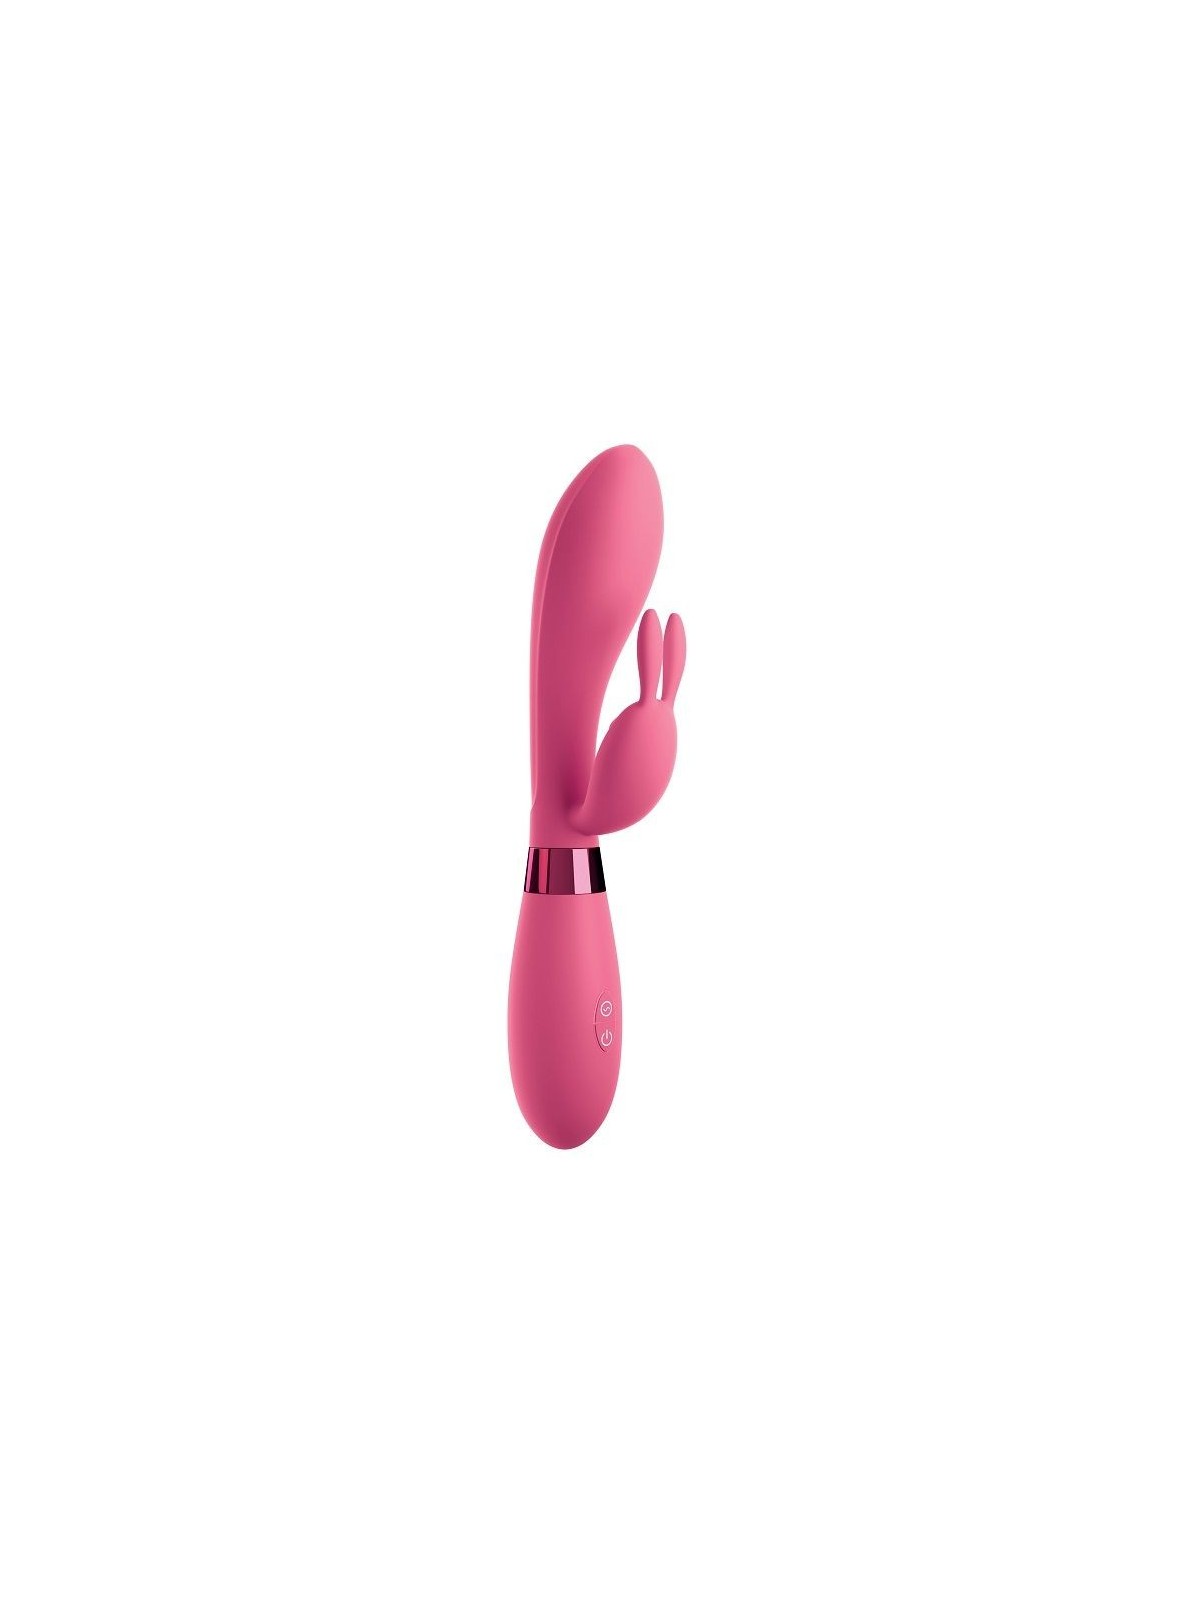 Omg Selfie Silicone Vibrator Rabbit Pink - Comprar Conejito vibrador Omg - Conejito rampante (1)